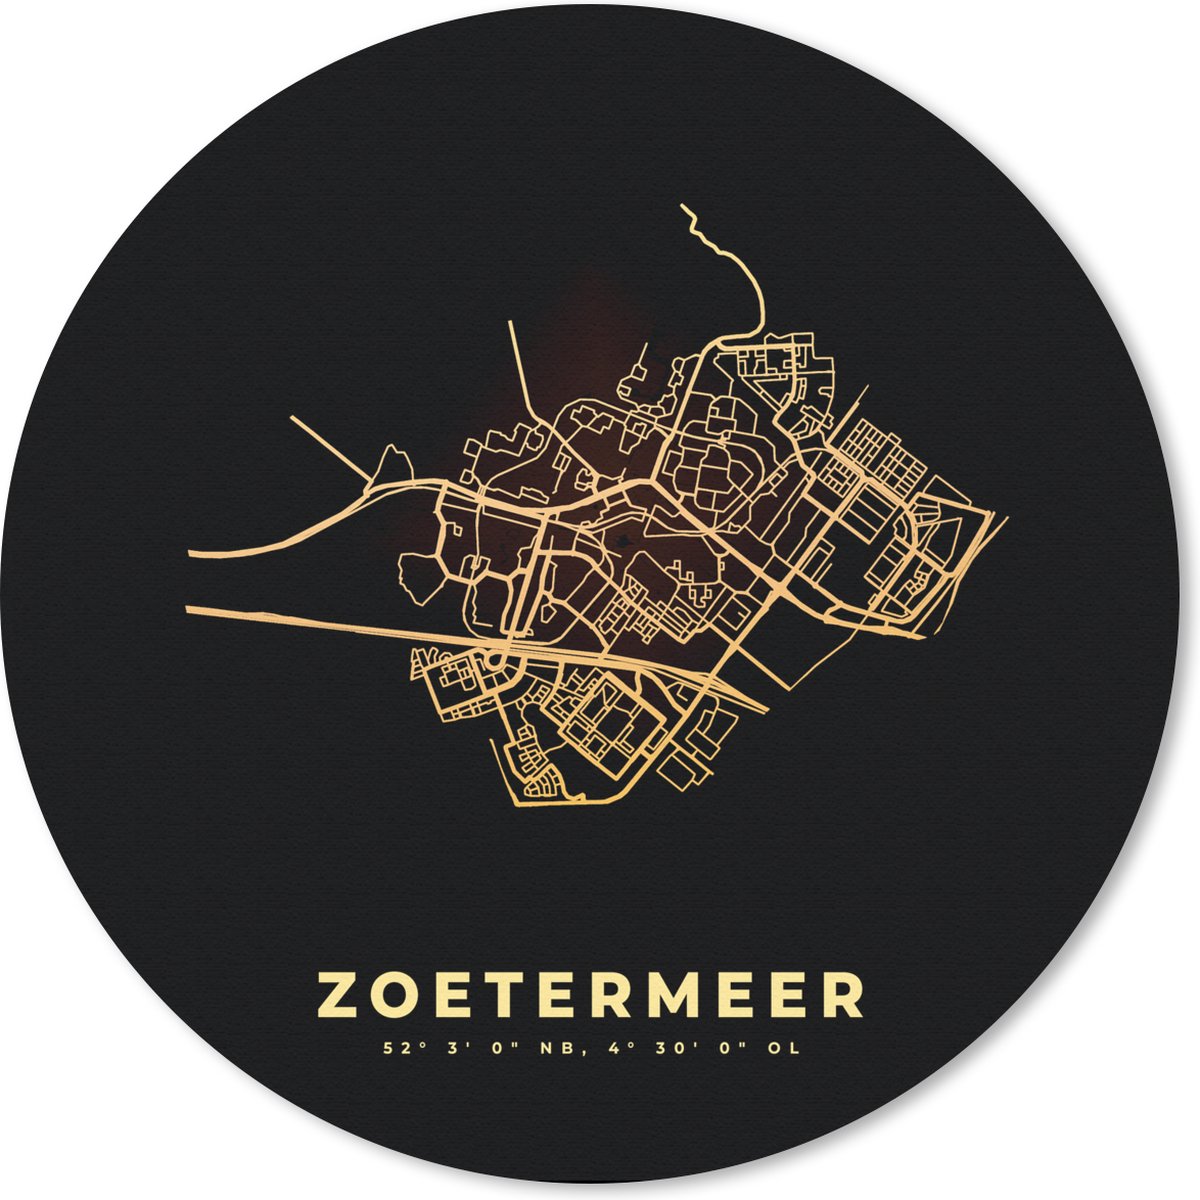 Muismat - Mousepad - Rond - Zoetermeer - Kaart - Plattegrond - Stadskaart - 40x40 cm - Ronde muismat